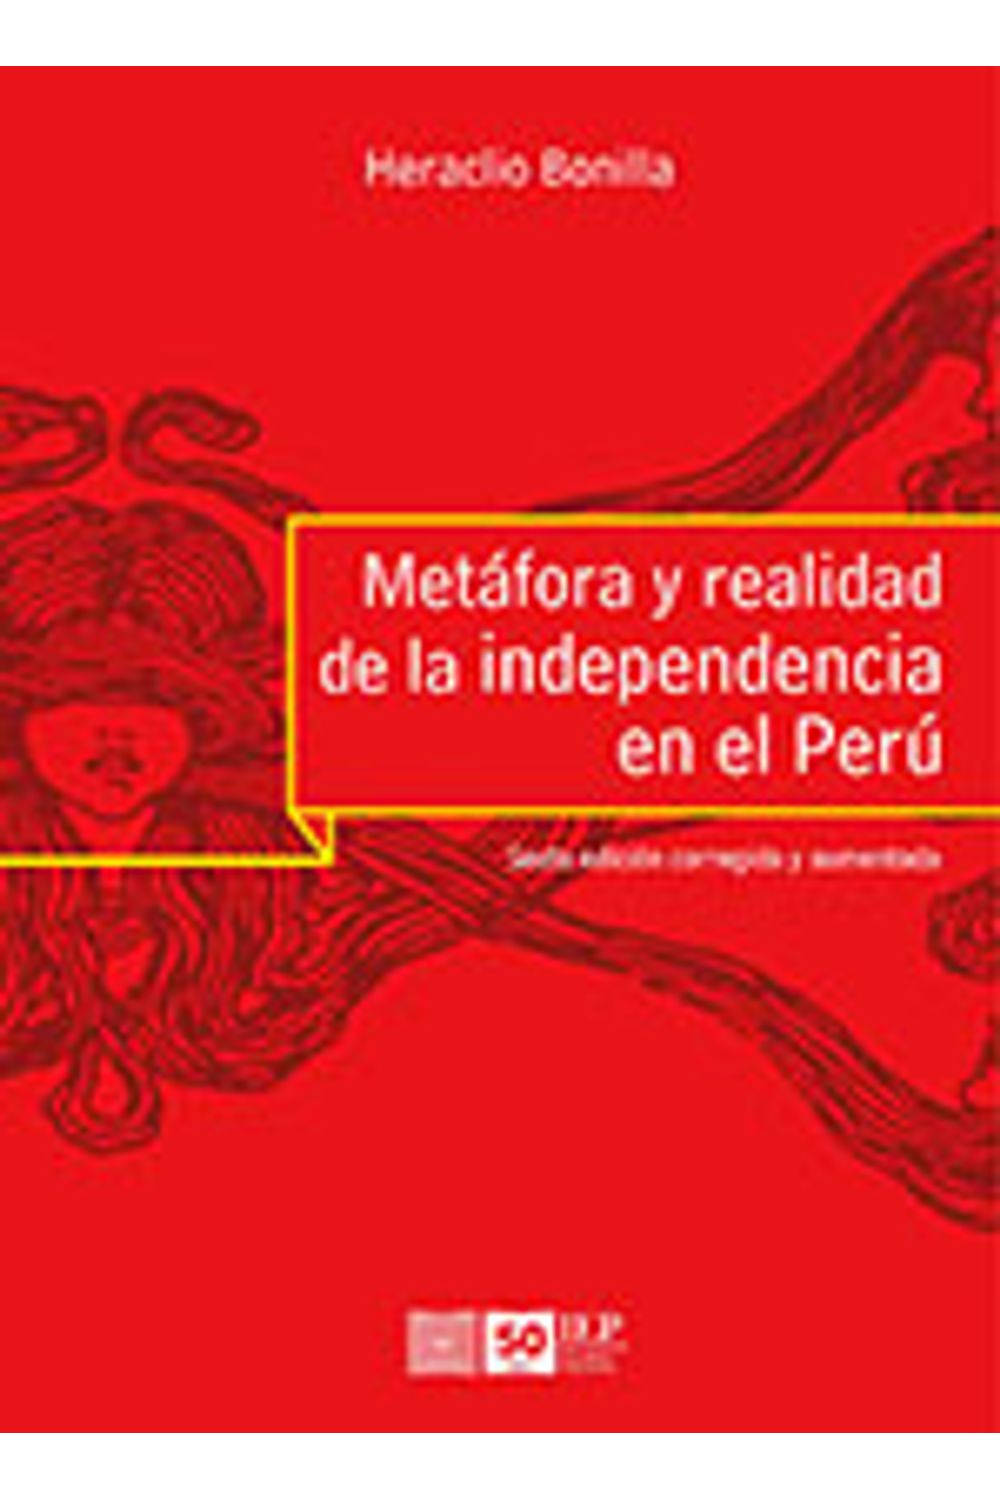 bm-metafora-y-realidad-de-la-independencia-en-el-peru-instituto-de-estudios-peruanos-iep-9789972515774